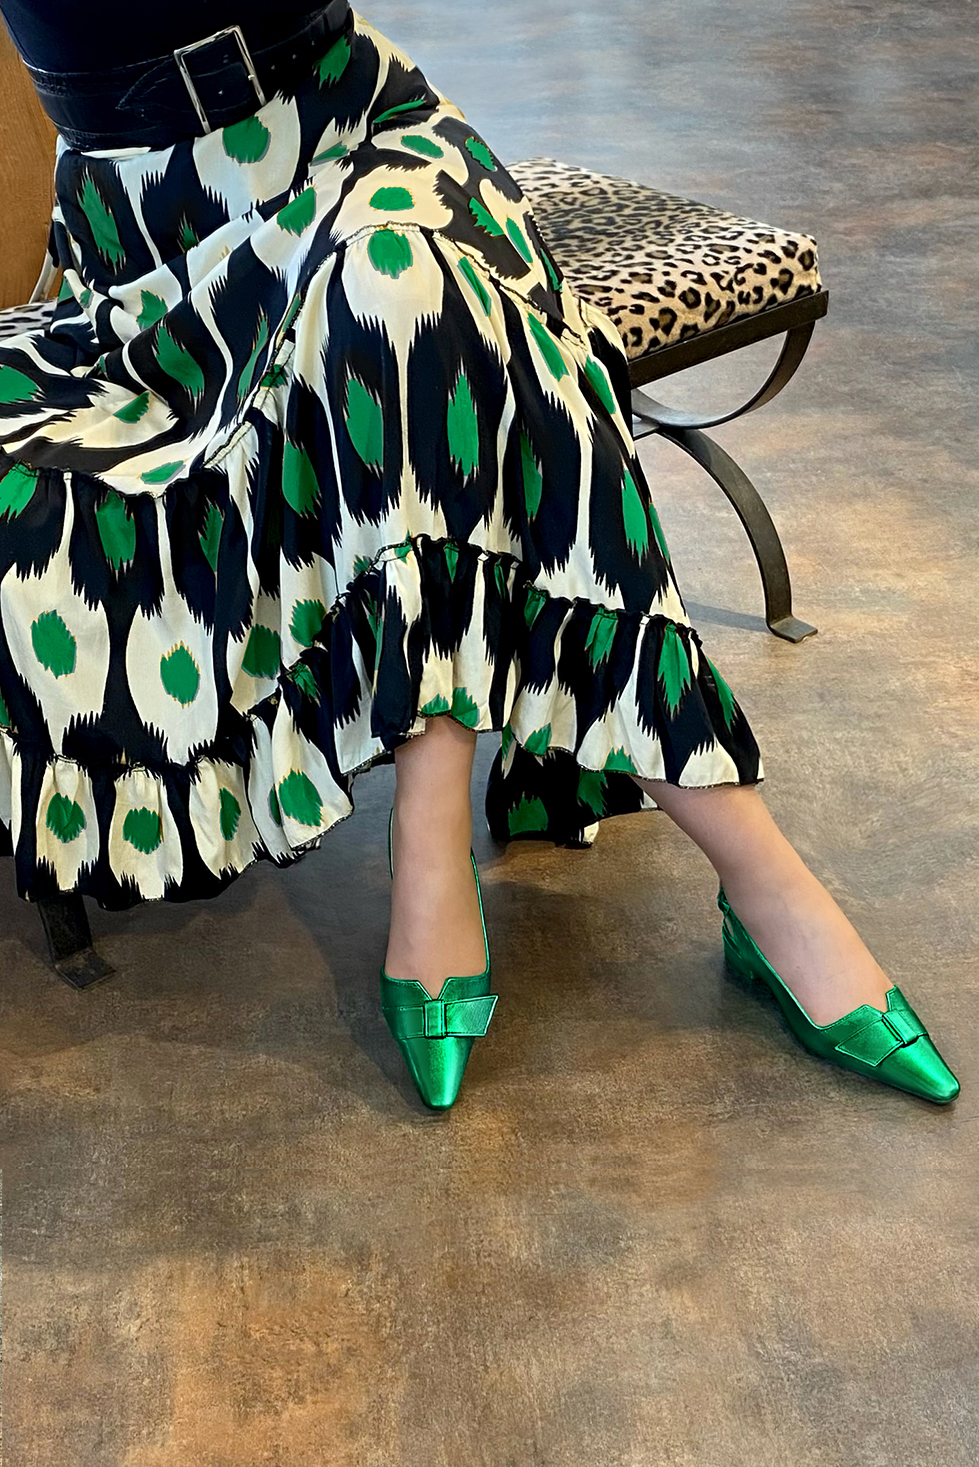 Chaussure femme à brides :  couleur vert émeraude. Bout effilé. Petit talon bottier. Vue porté - Florence KOOIJMAN